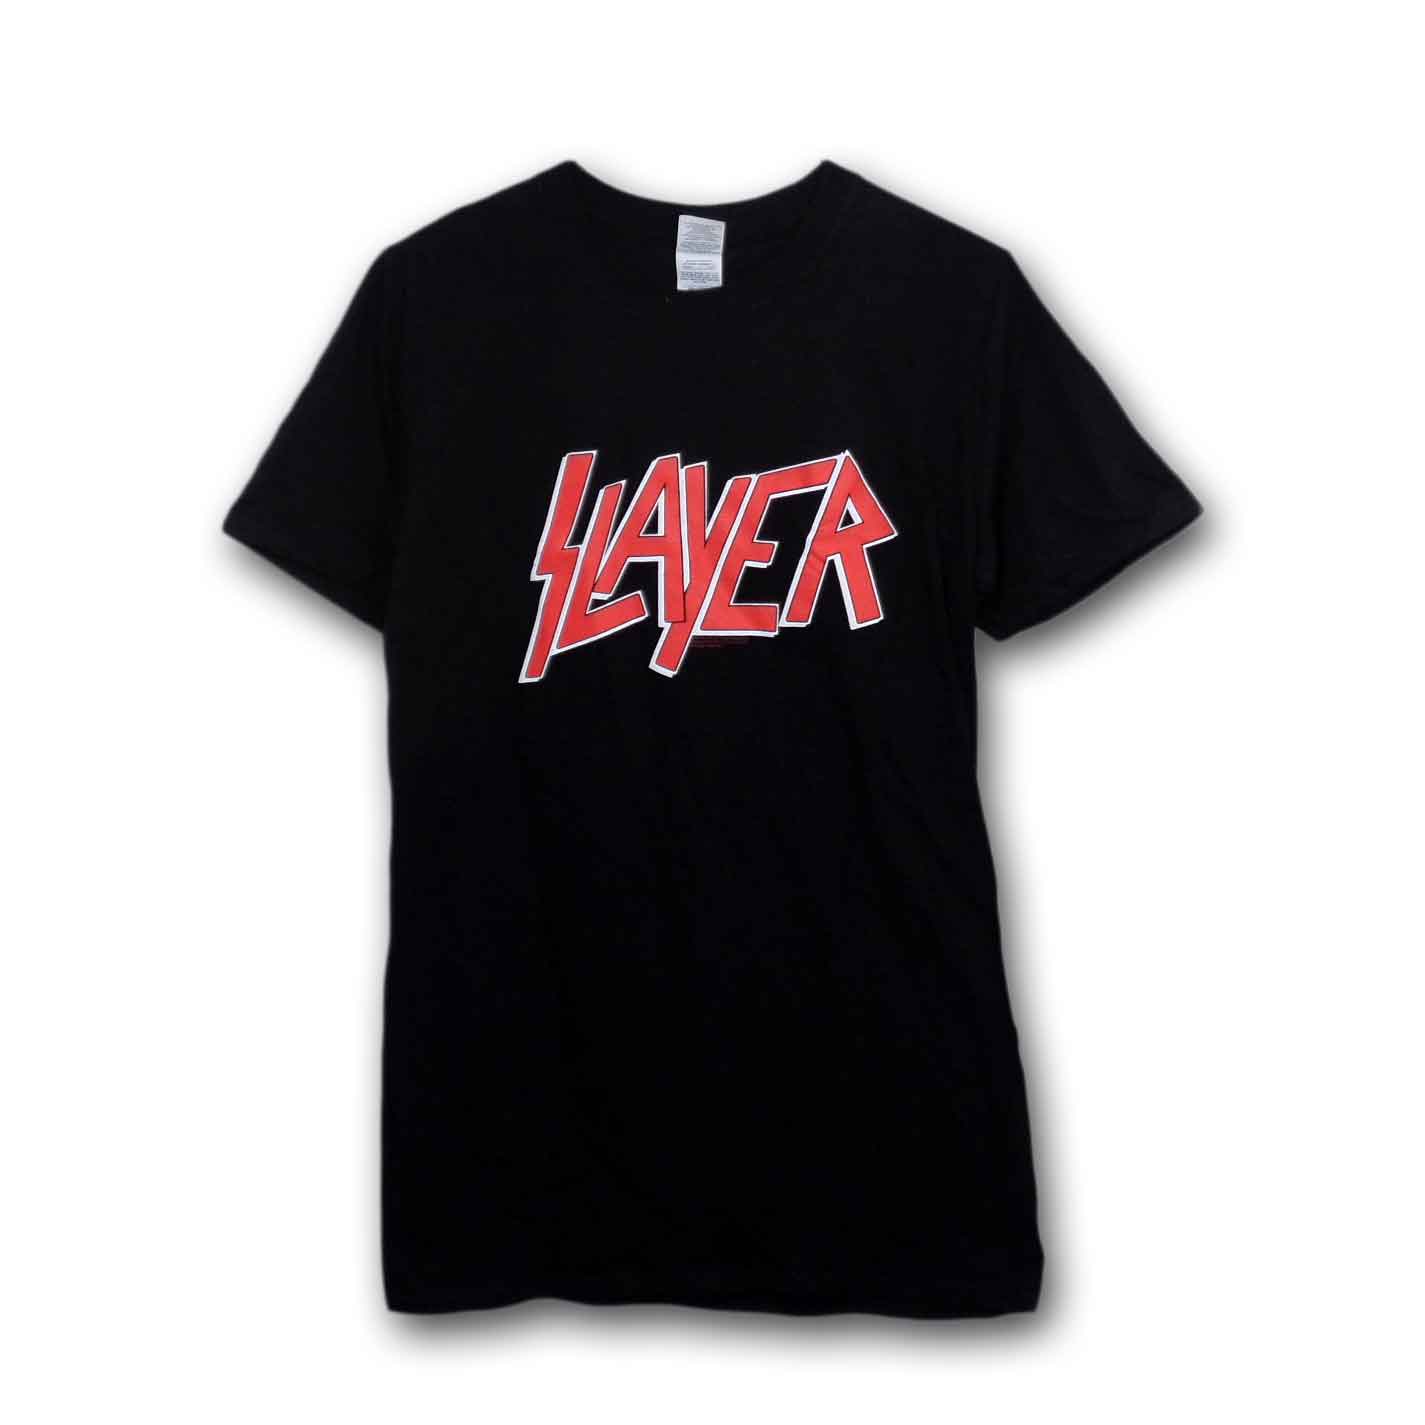 SLAYER スレイヤー バンドTシャツ コピーライトあり ブラック Mサイズ